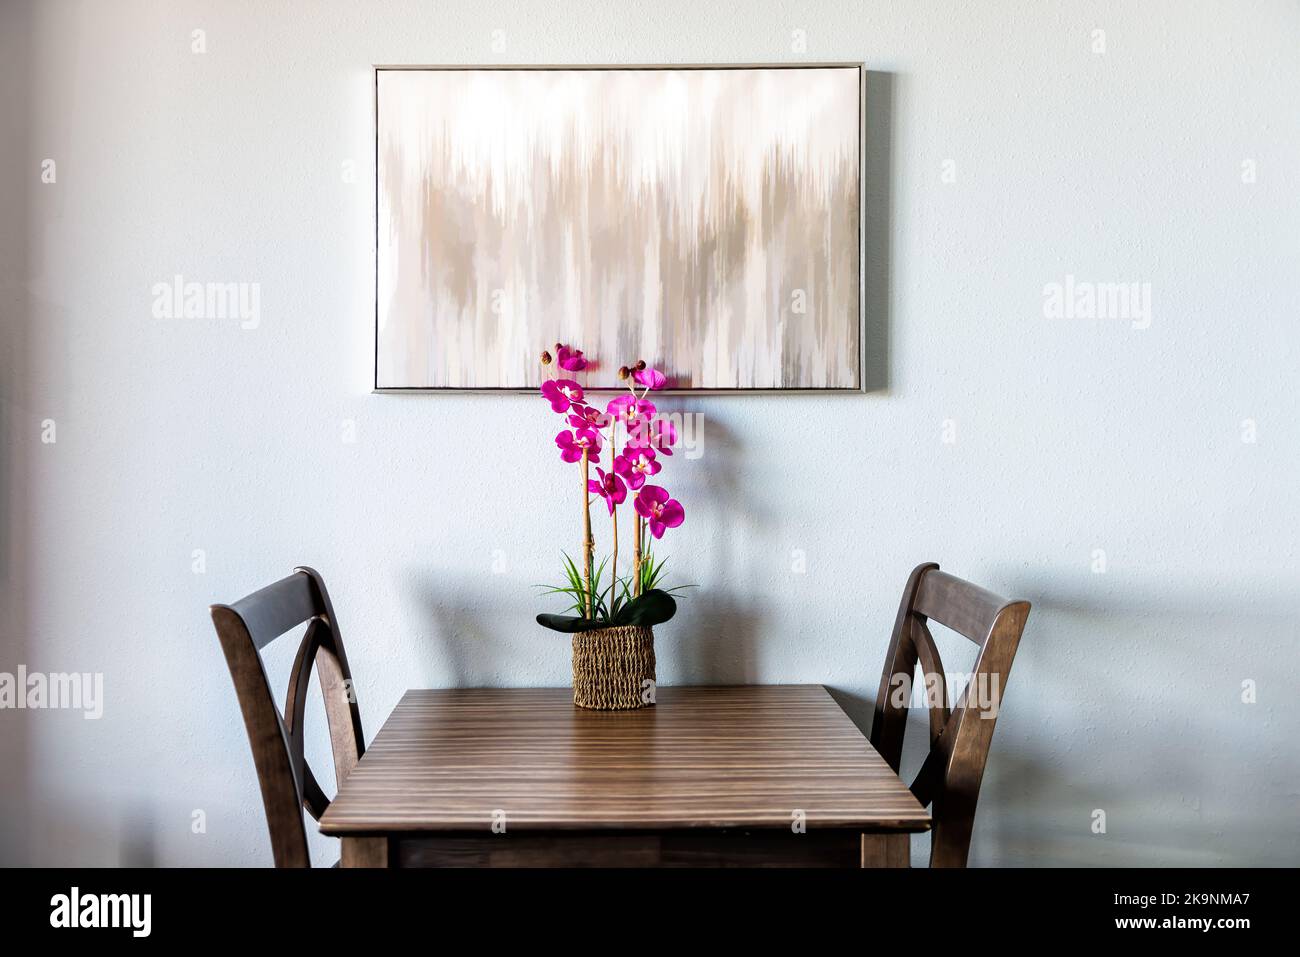 Minimalismo minimalista vista sobre dos sillas por mesa con pintura moderna y orquídeas flores en macetas artificiales en jarrón de olla por la pared blanca de la habitación del apartamento Foto de stock